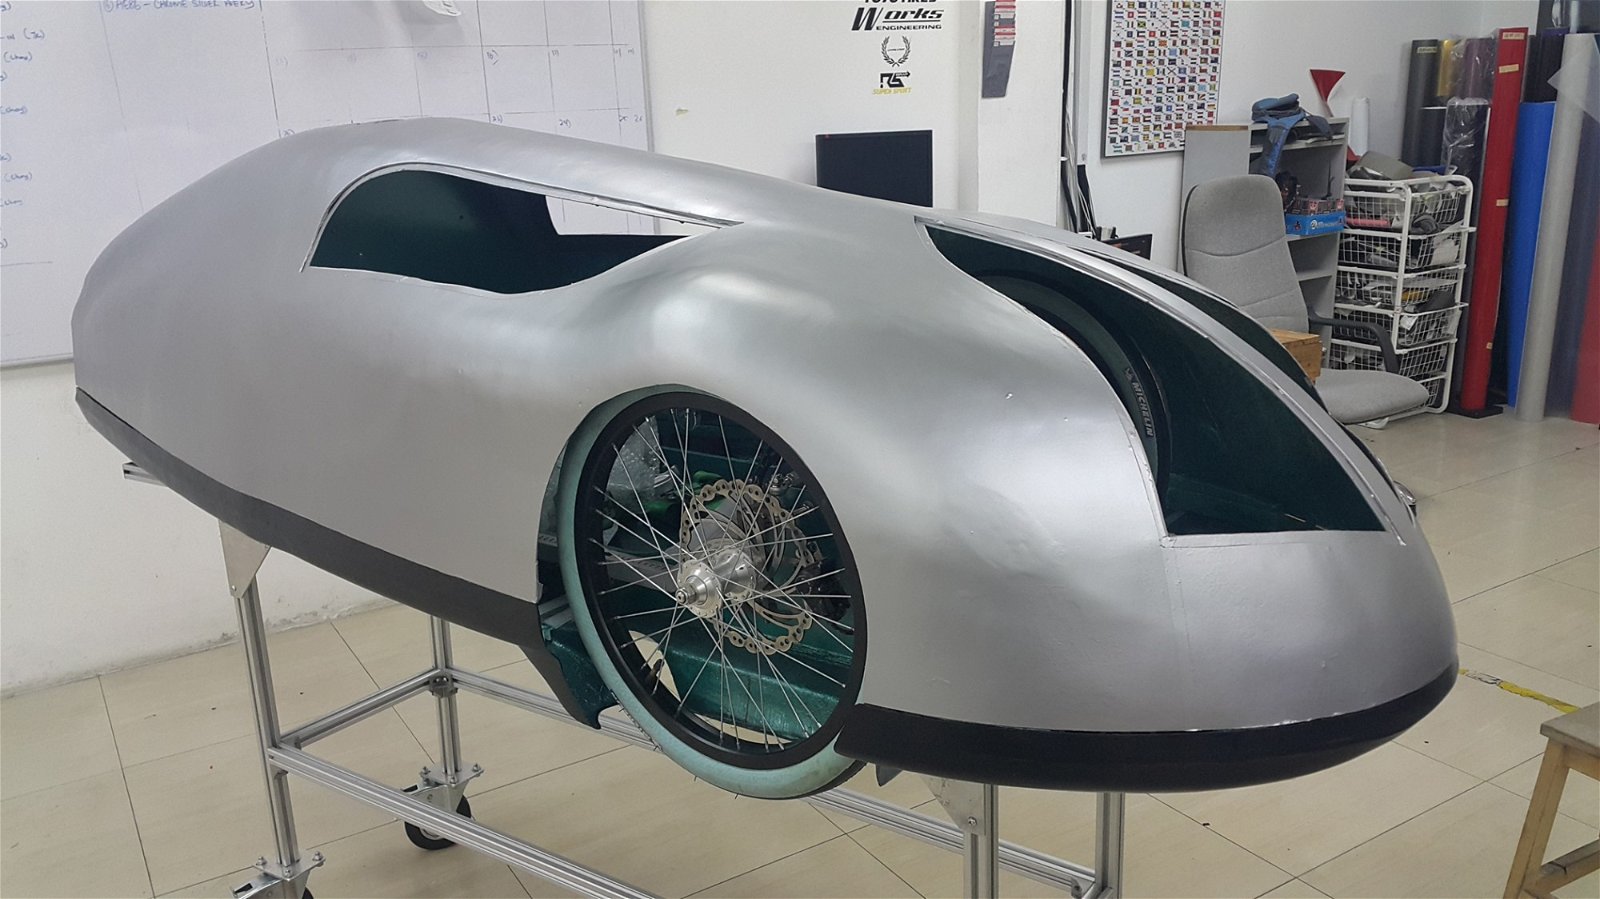 这款原型车是玛拉工艺大学原型车团队花费了约莫4个月的时间才完成的作品，以硬壳式结构代替底盘，使车子构造更稳固、轻盈。